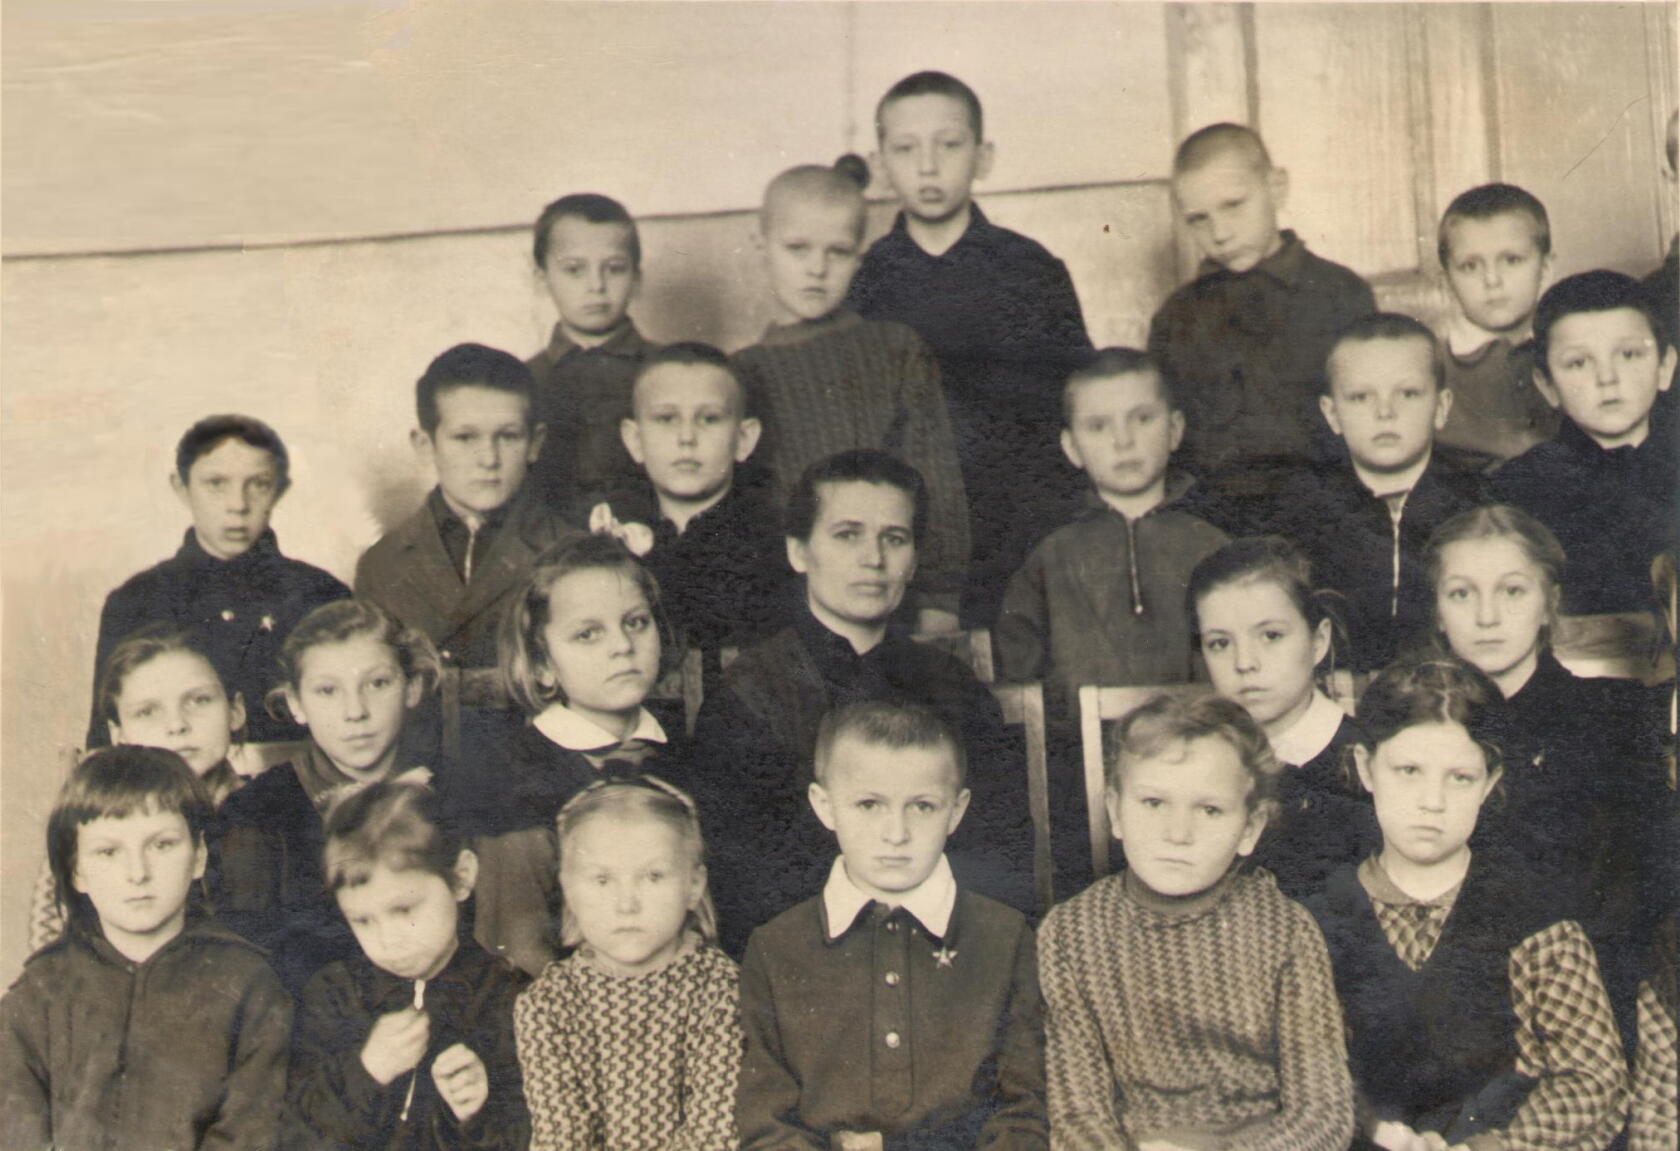 Анатолий в третьем ряду сверху, второй слева. Средняя школа №1 города Жодино, второй класс